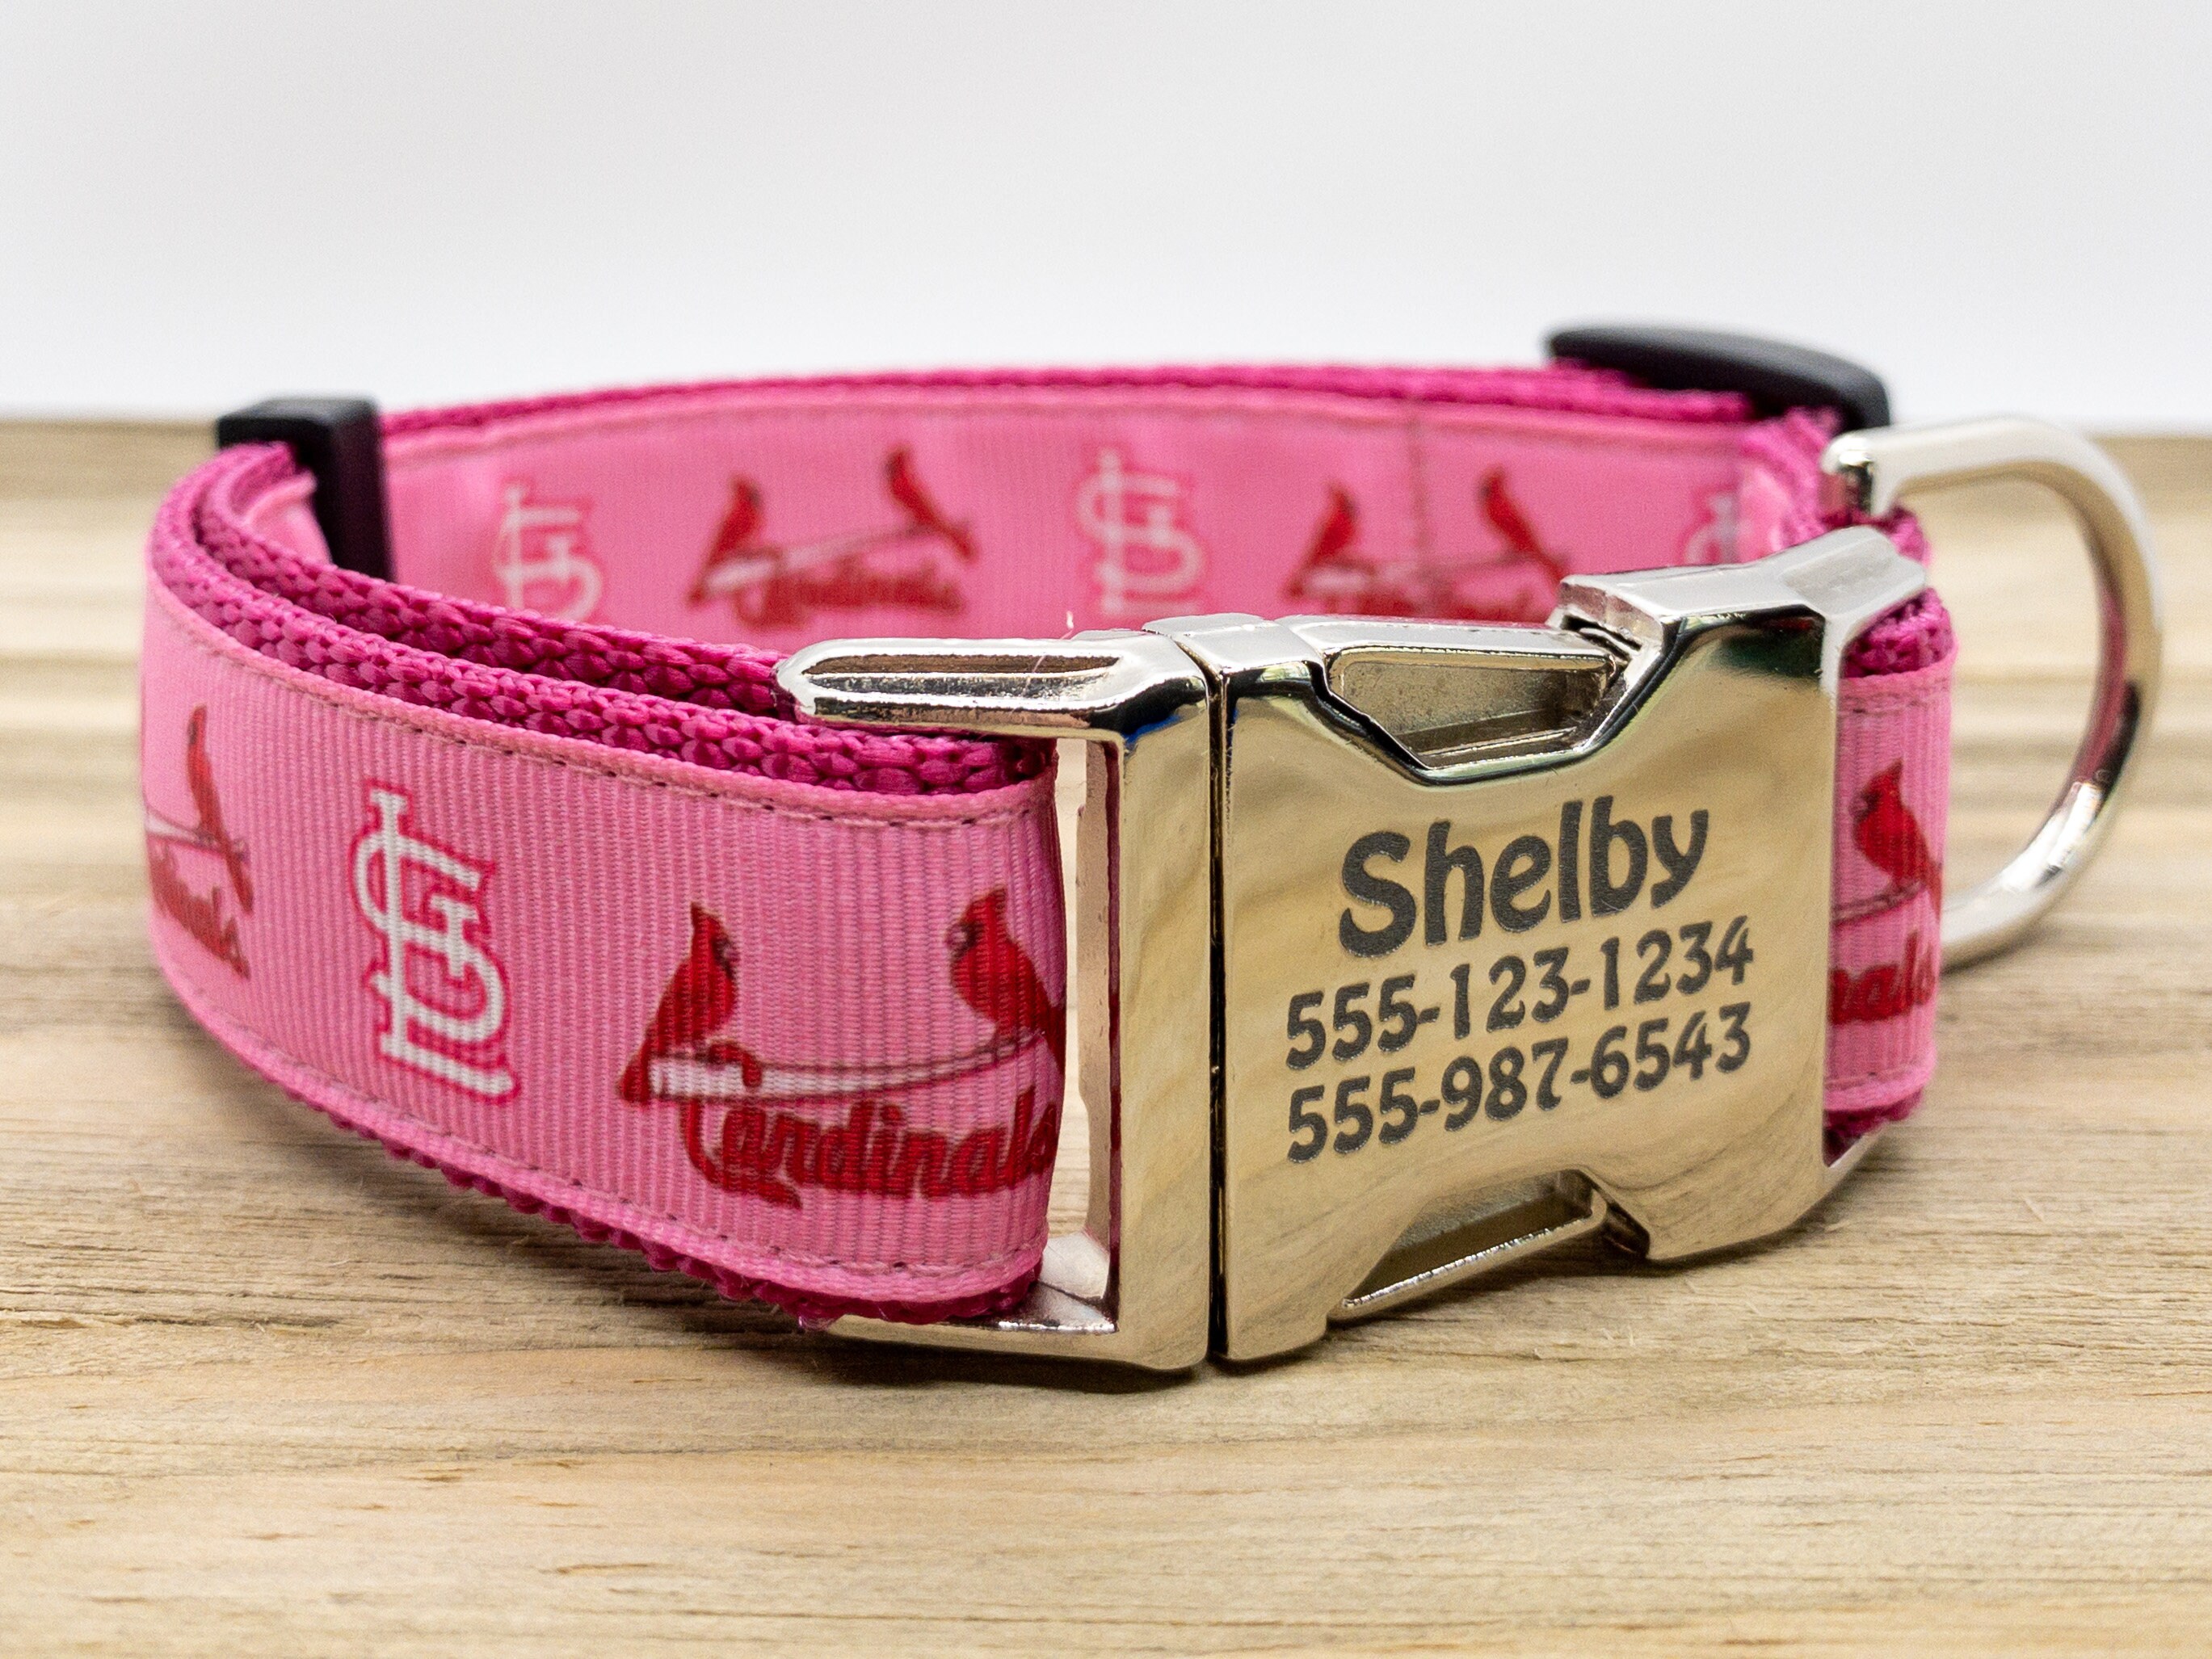 St. Louis Cardinals Pink Dog Collar - X-Small